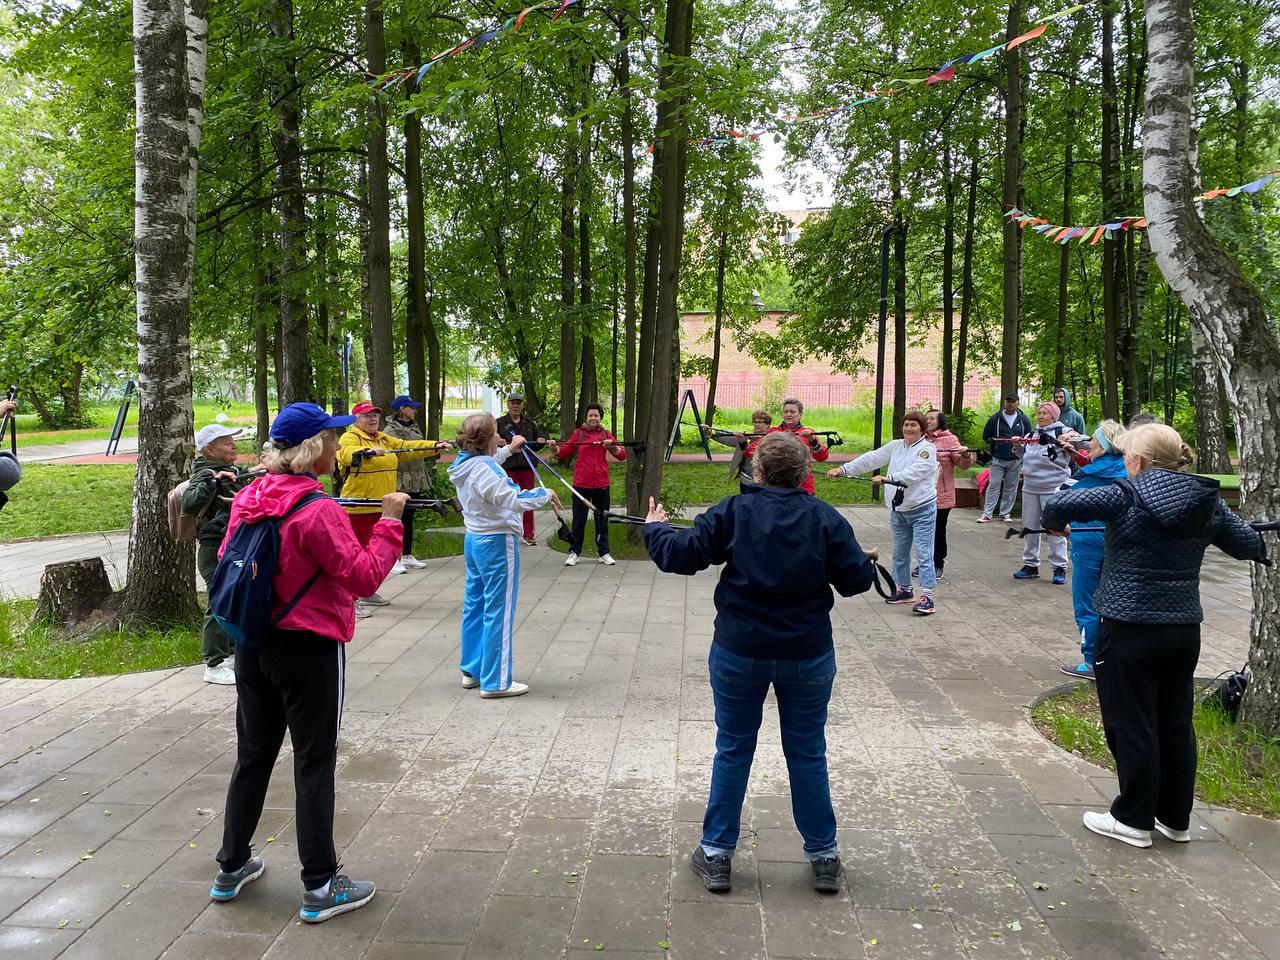 Мастер-класс по дыхательной гимнастике и скандинавской ходьбе прошел в парке Лосино-Петровского